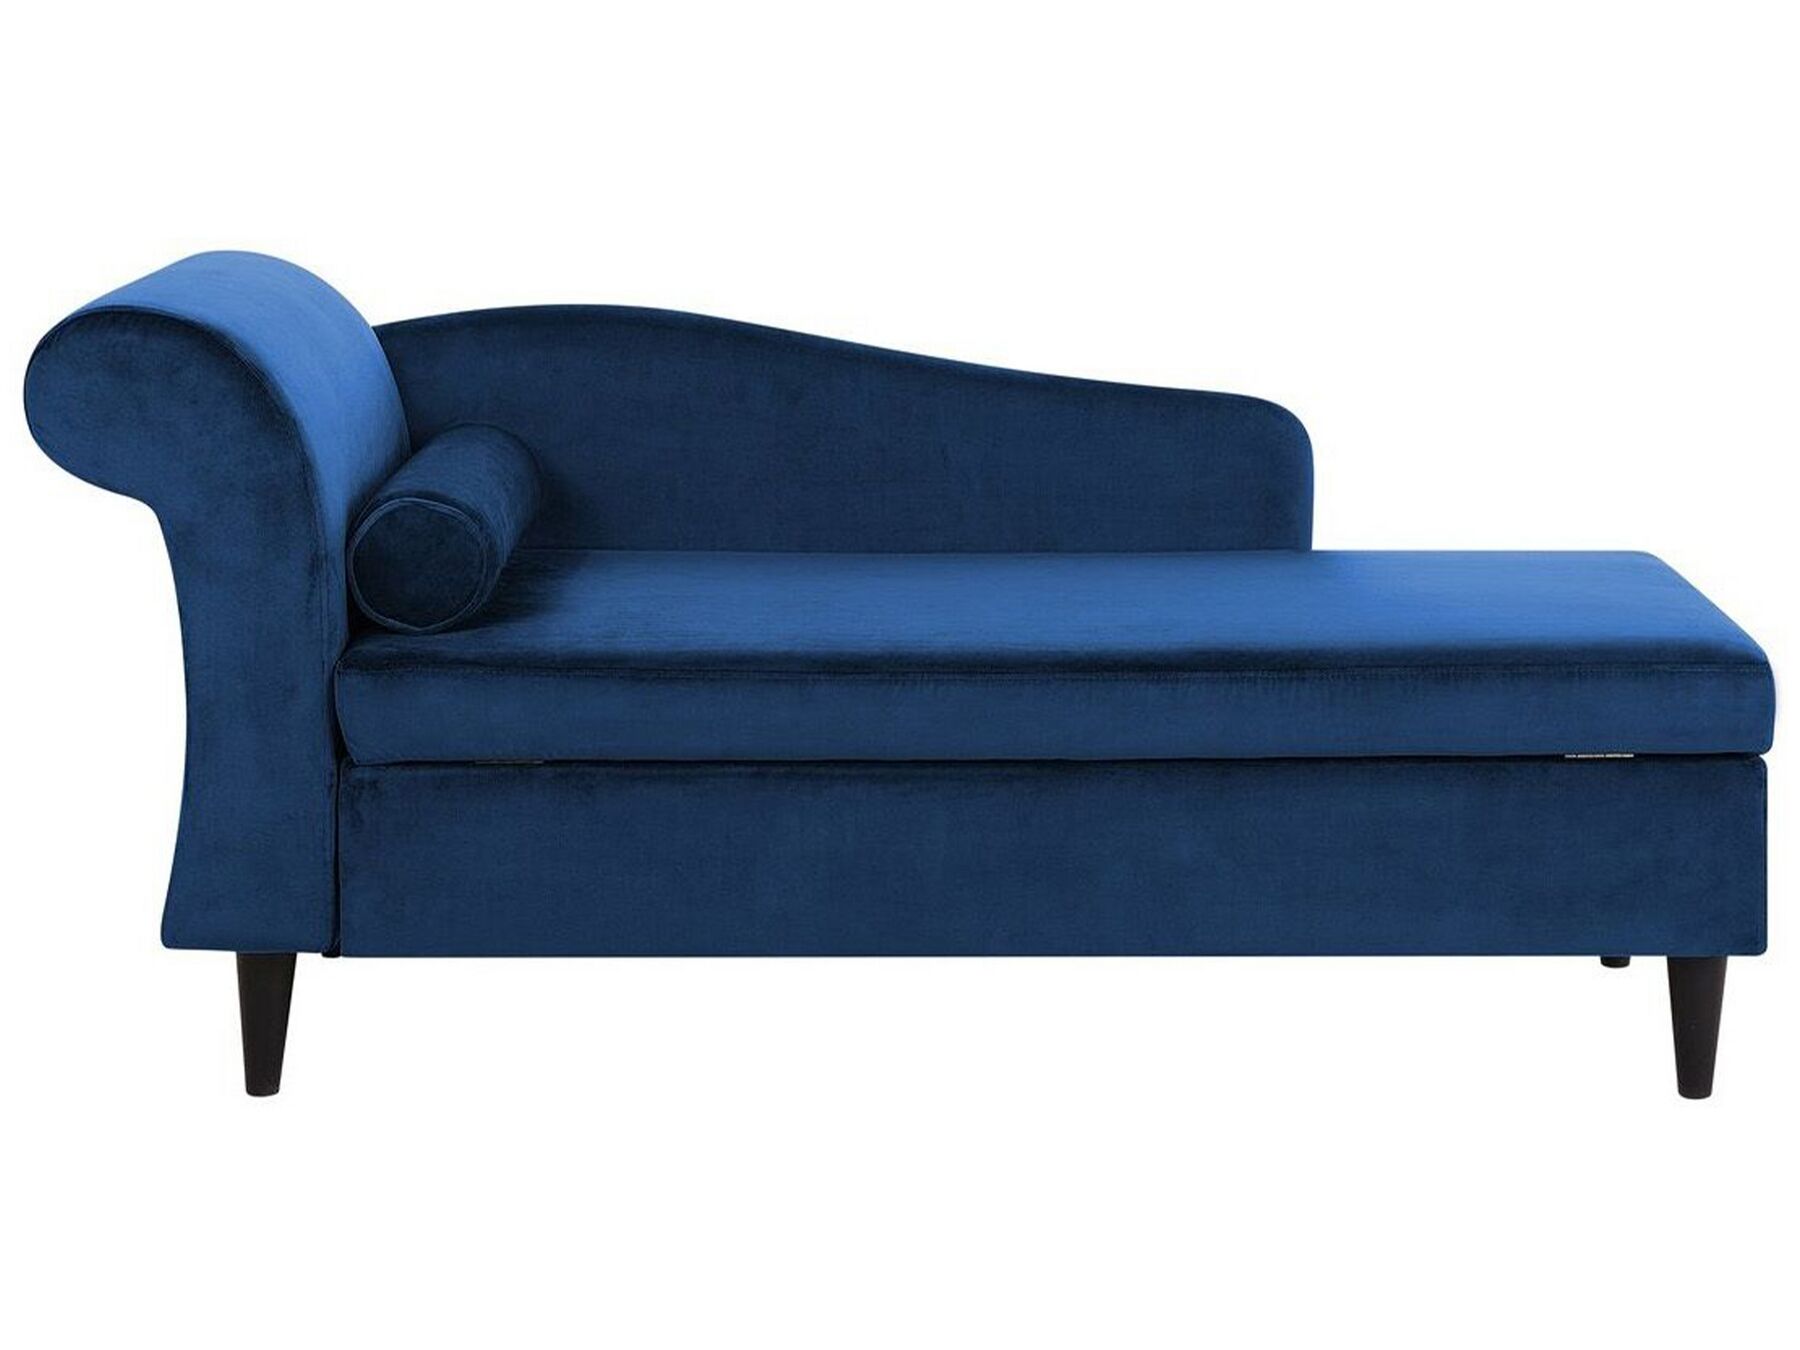 Chaise-longue à esquerda em veludo azul marinho LUIRO_729345